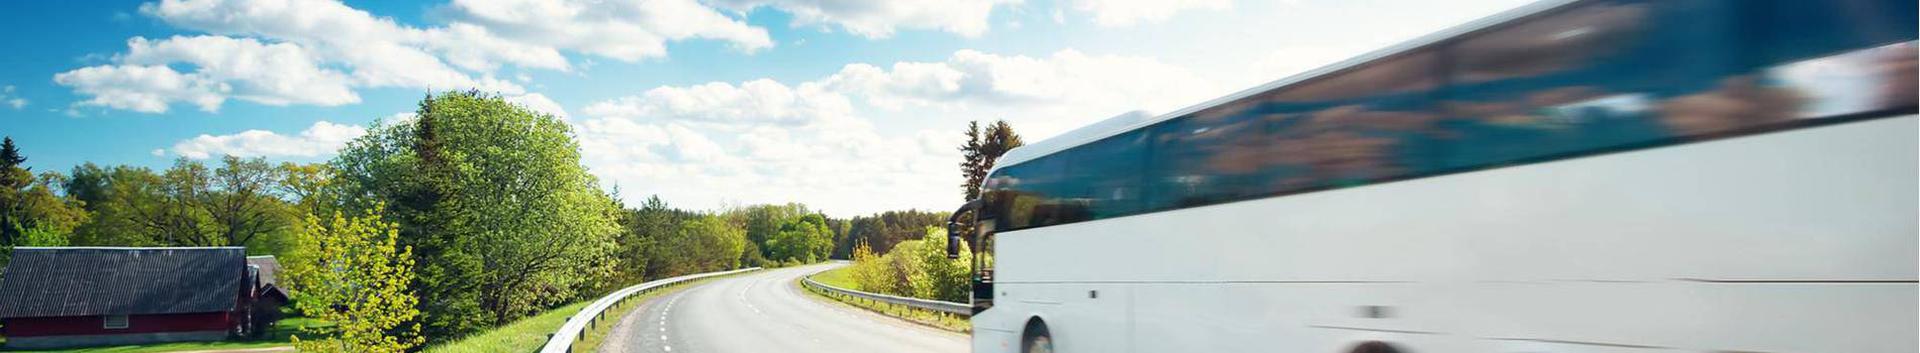 transpordi- ja kullerteenused, Juhiga busside rentimine, Sõitjatevedu